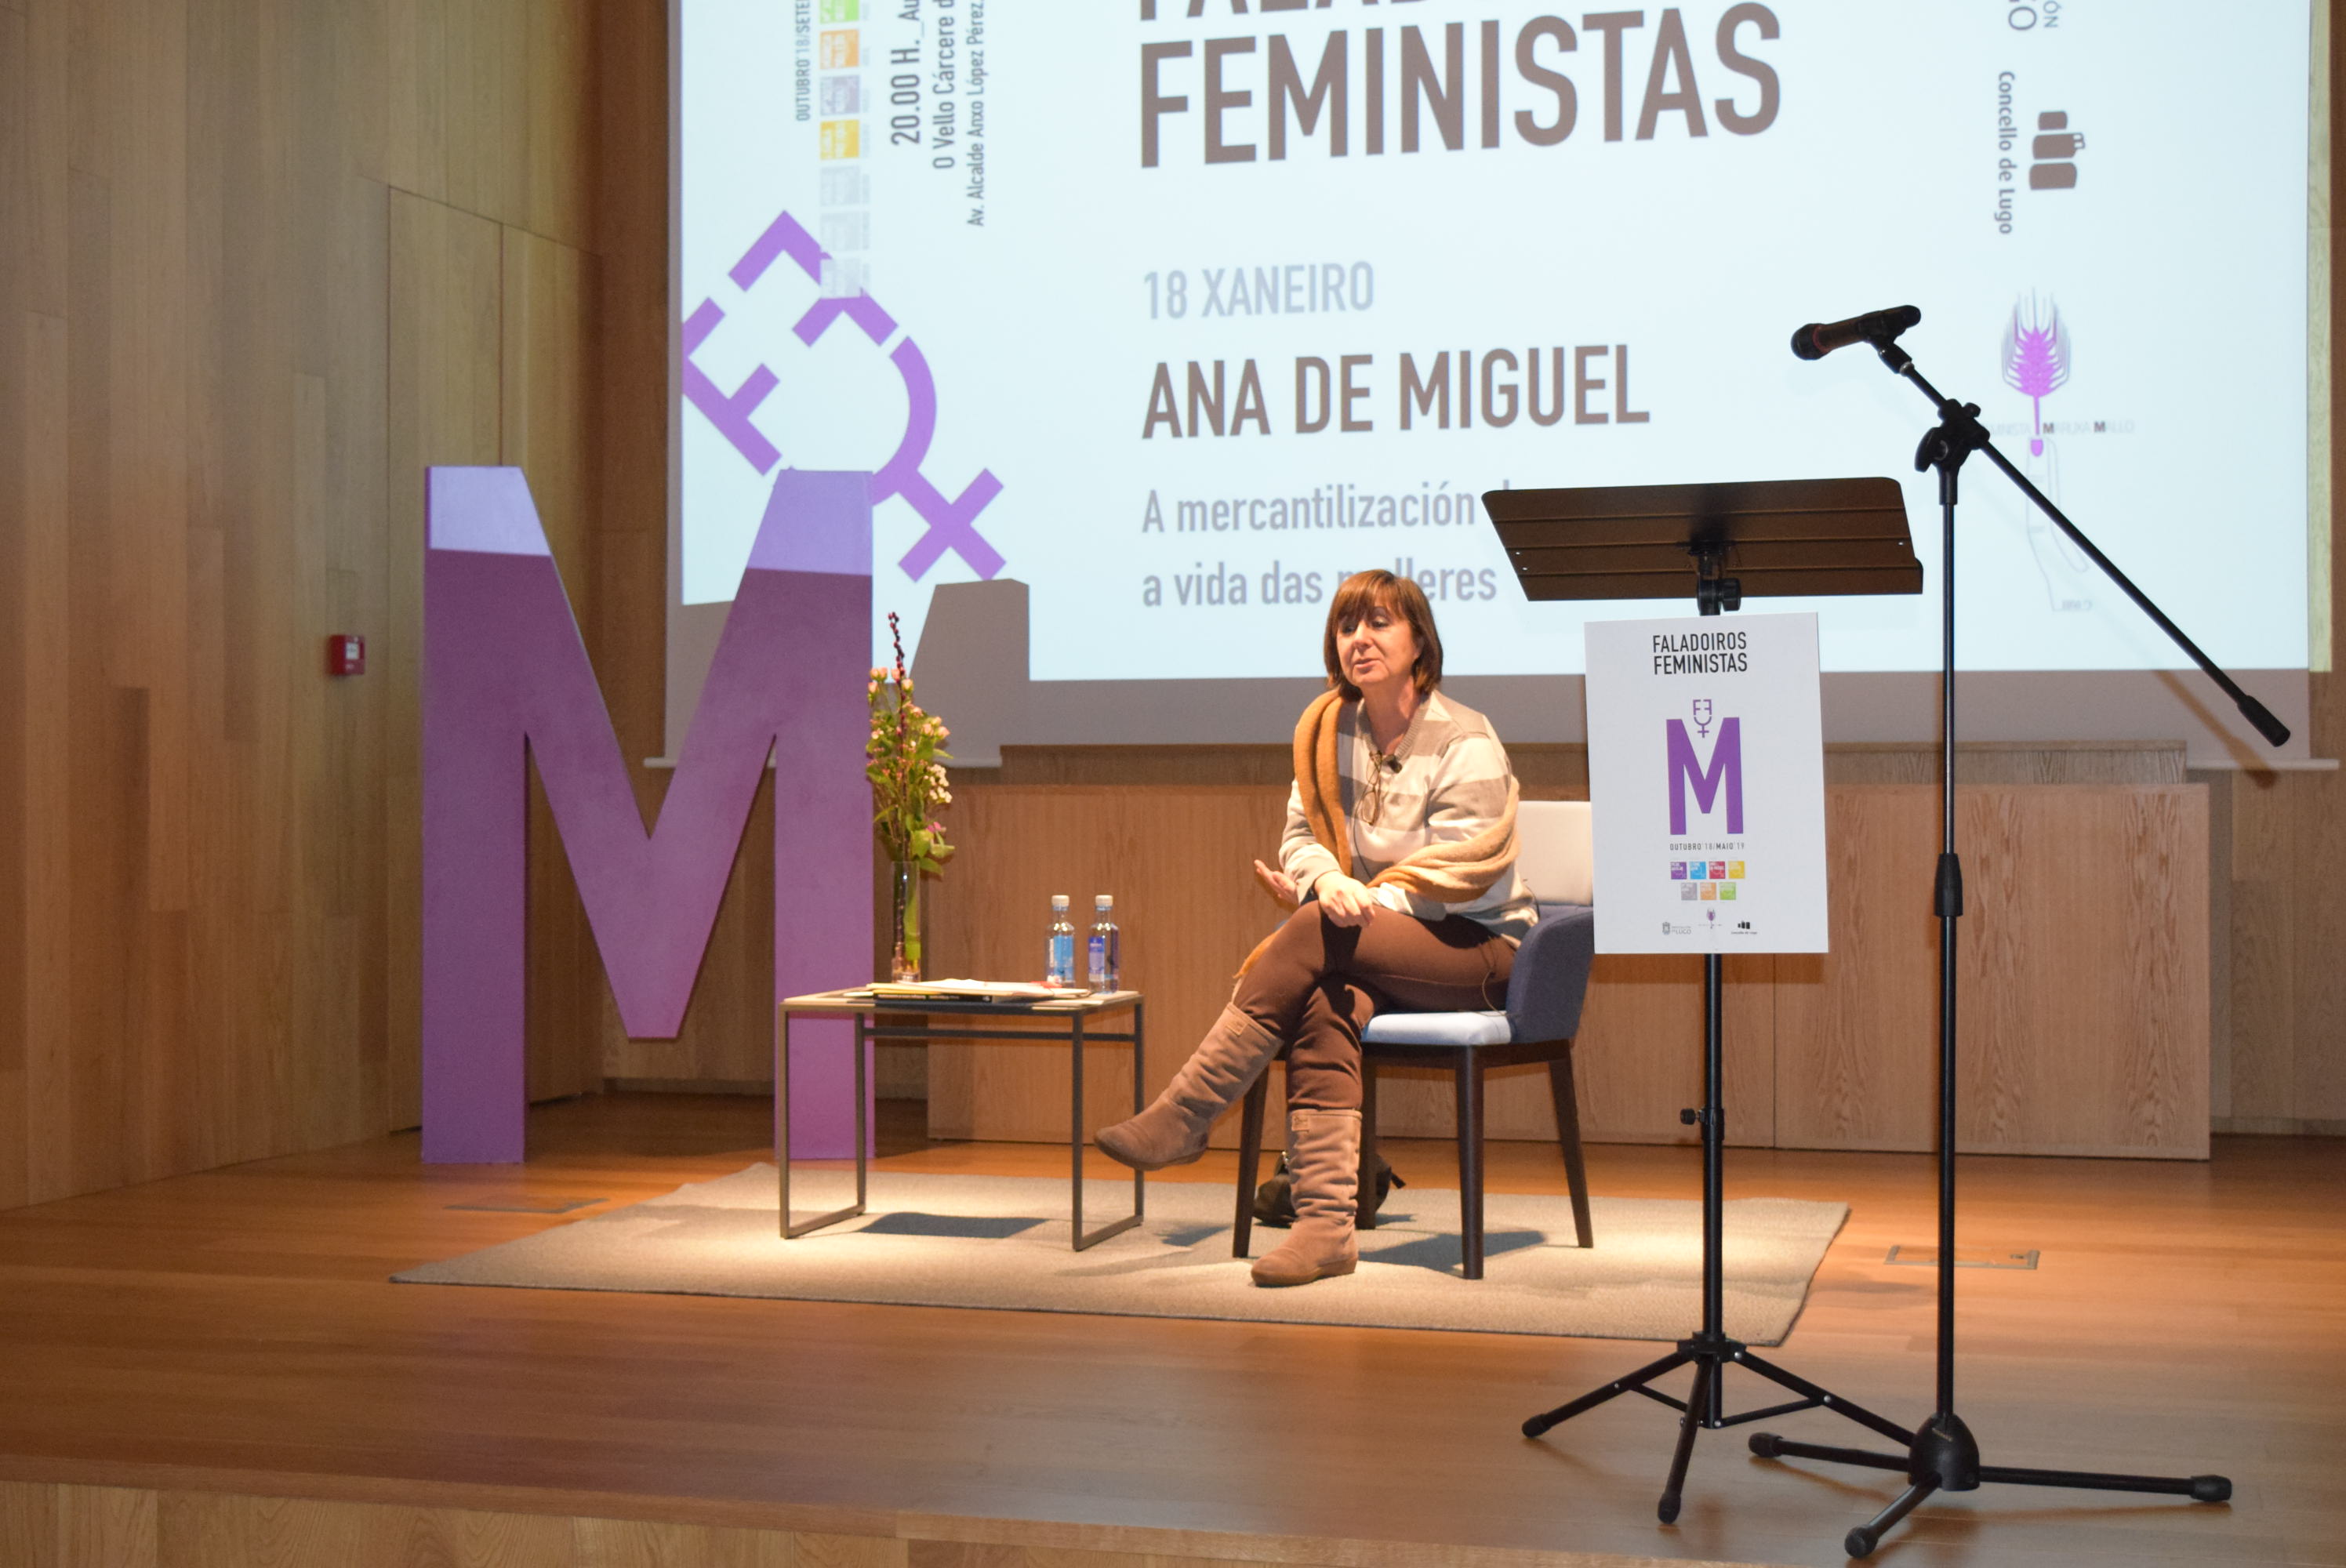 Ana de Miguel criticou “a mercantilización do corpo da muller” no faladoiro feminista da Deputación e o Concello